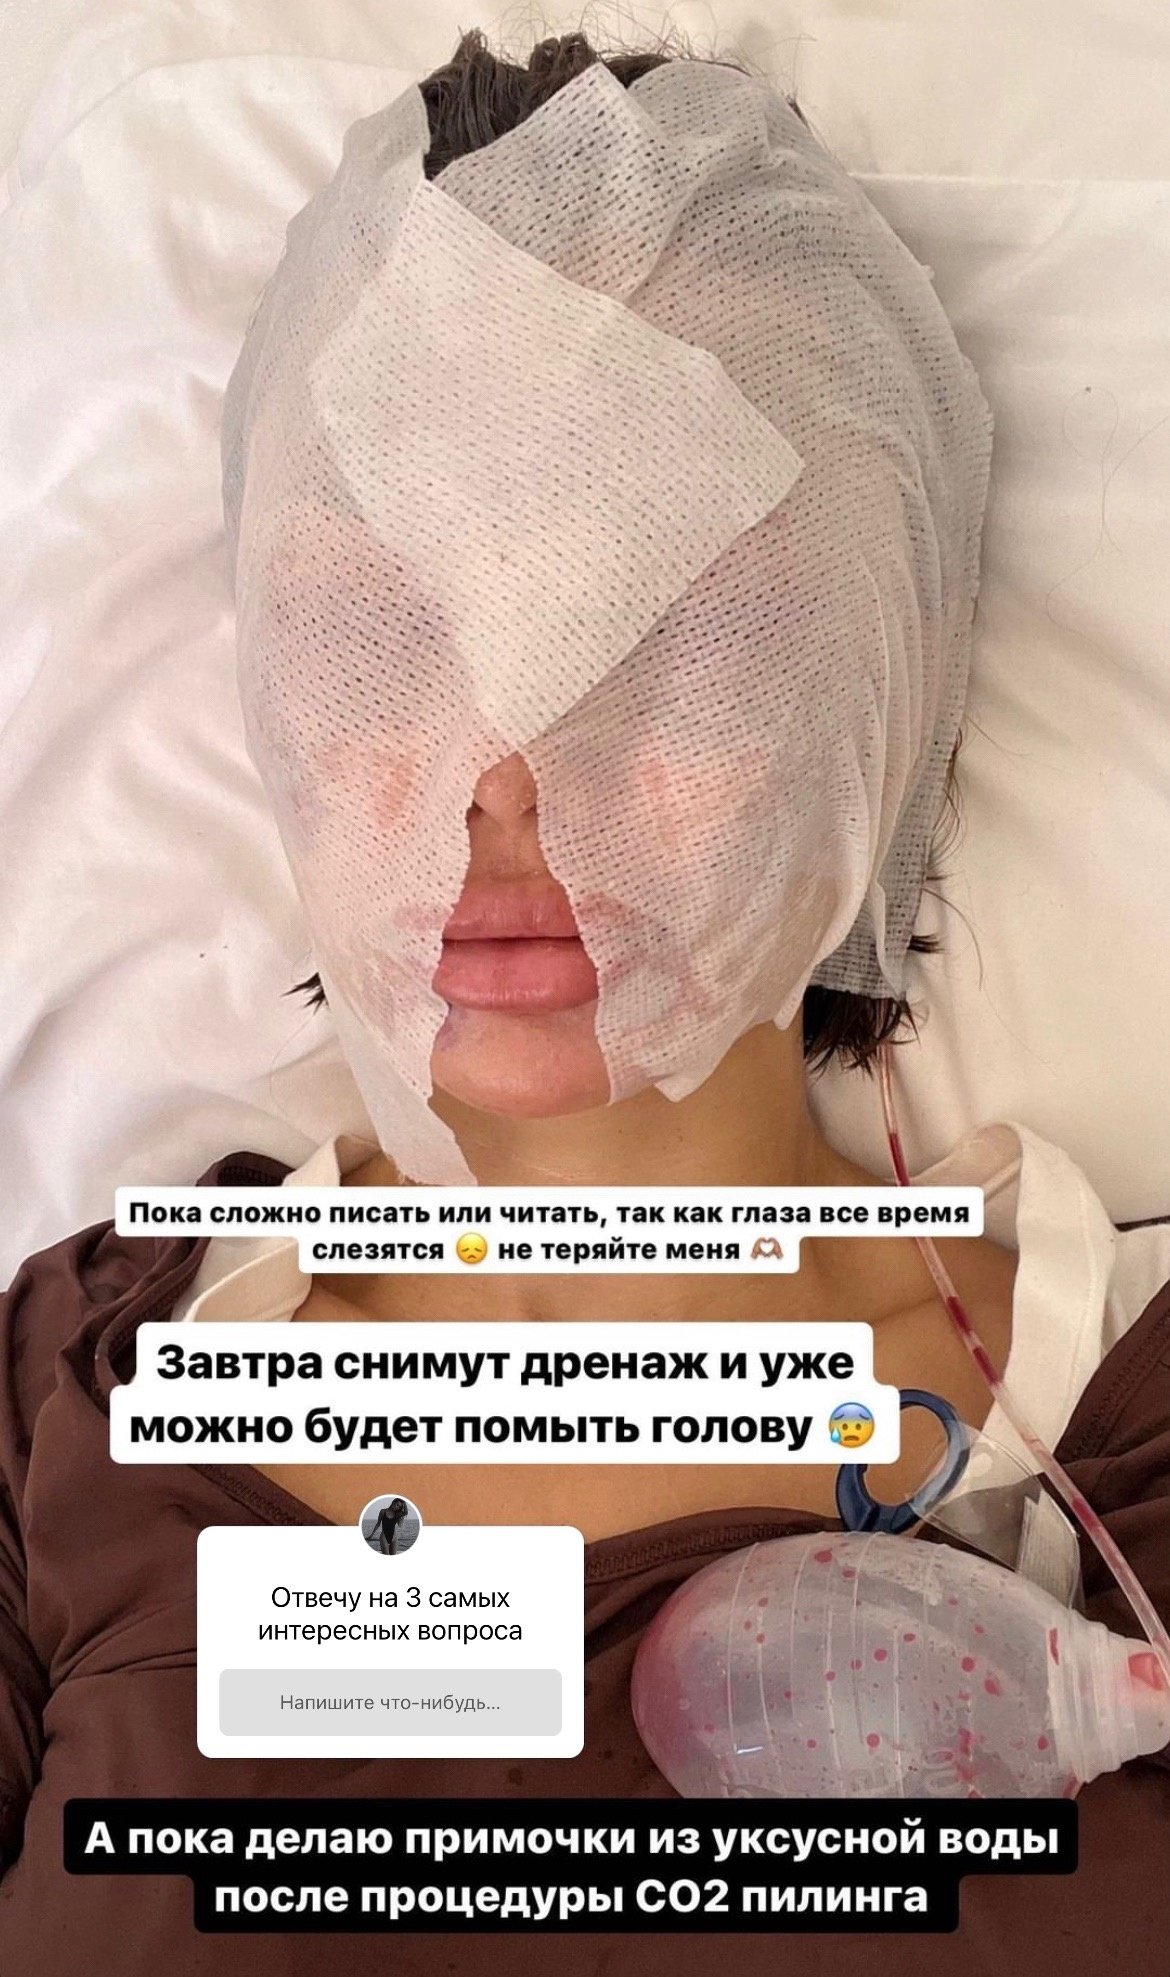 "Не хватает рук": Виктория Боня ответила на критику после пластической операции